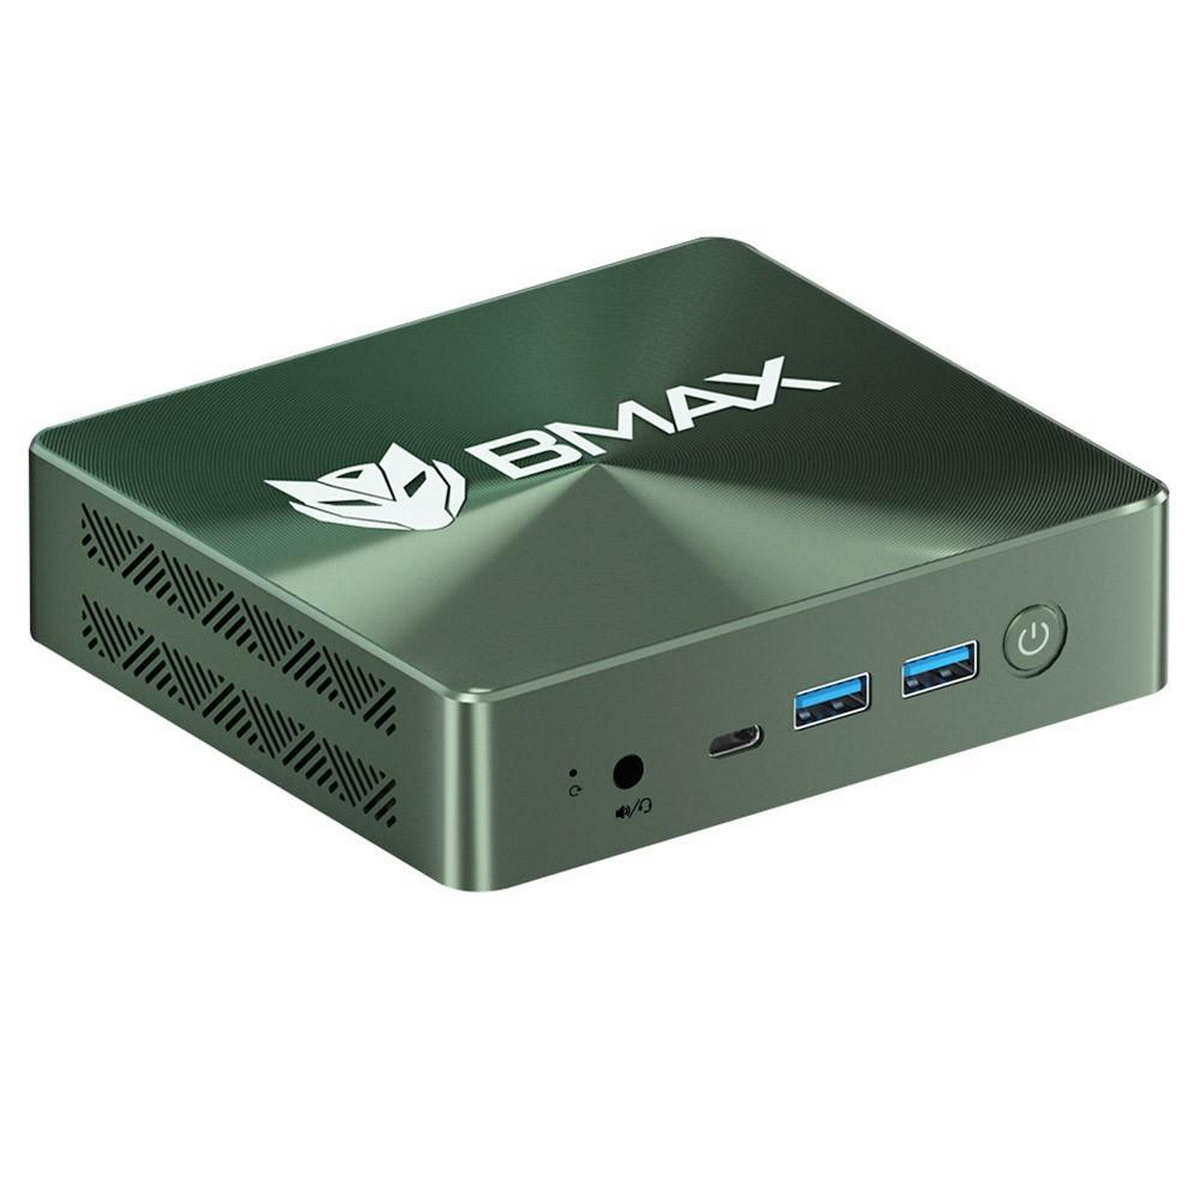 BMAX B6 PRO, Mini-PC, 16 Plus Graphics 512 GB Iris® SSD, Intel® GB RAM